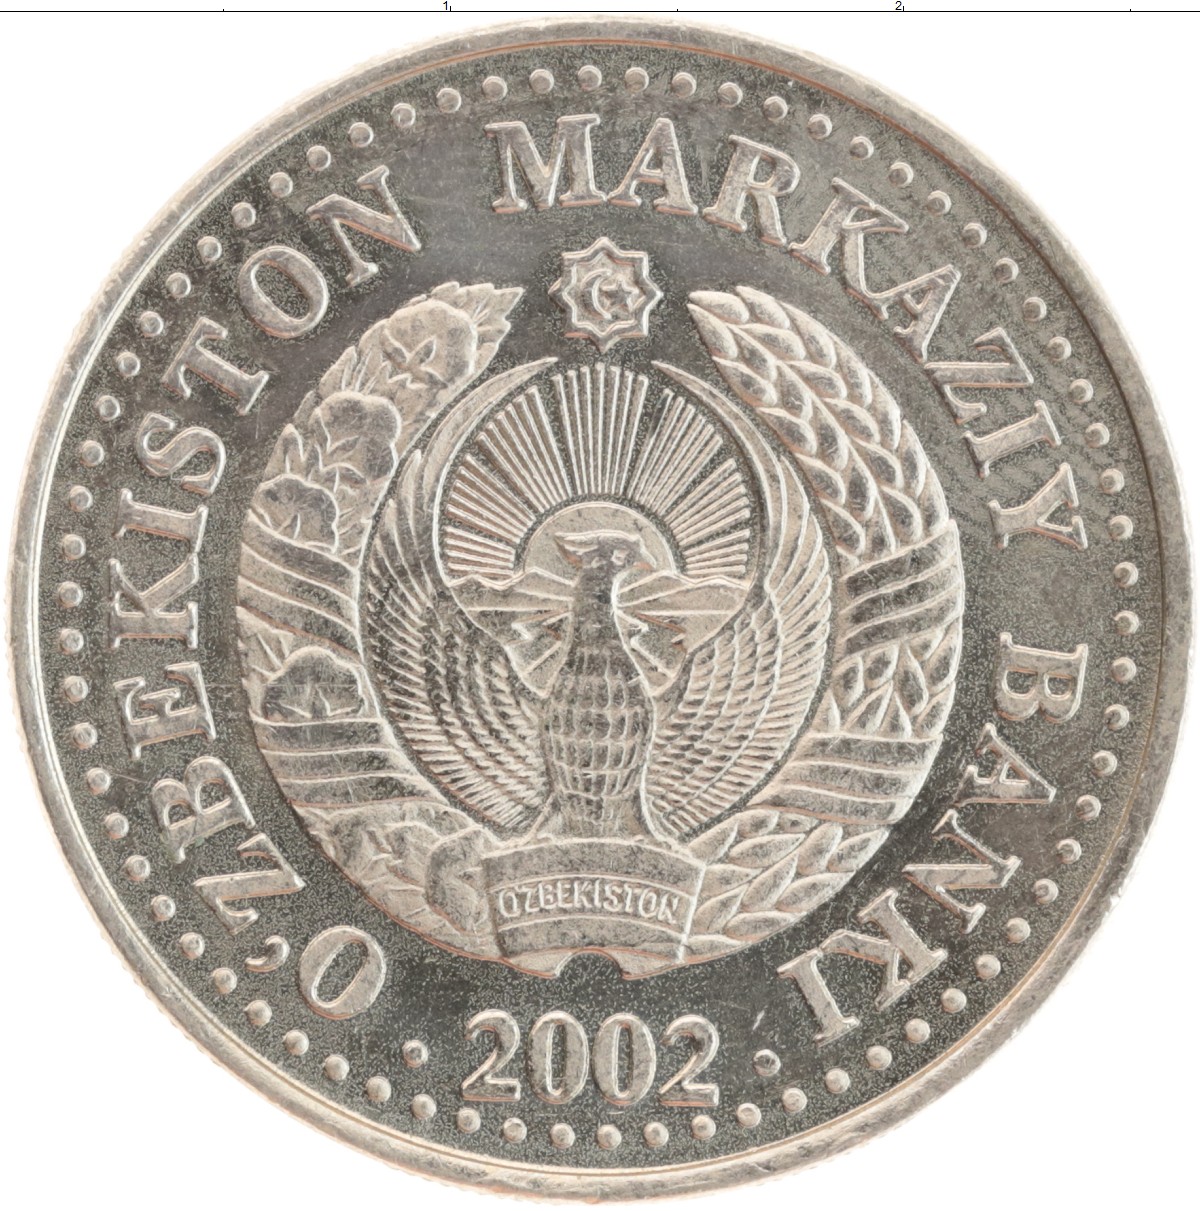 Ташкент 1999. Монета Мангуберди. Узбекистан 25 сум 1999. 25 Сом 1999 Узбекистан. 25 Сом монета Узбекистан.